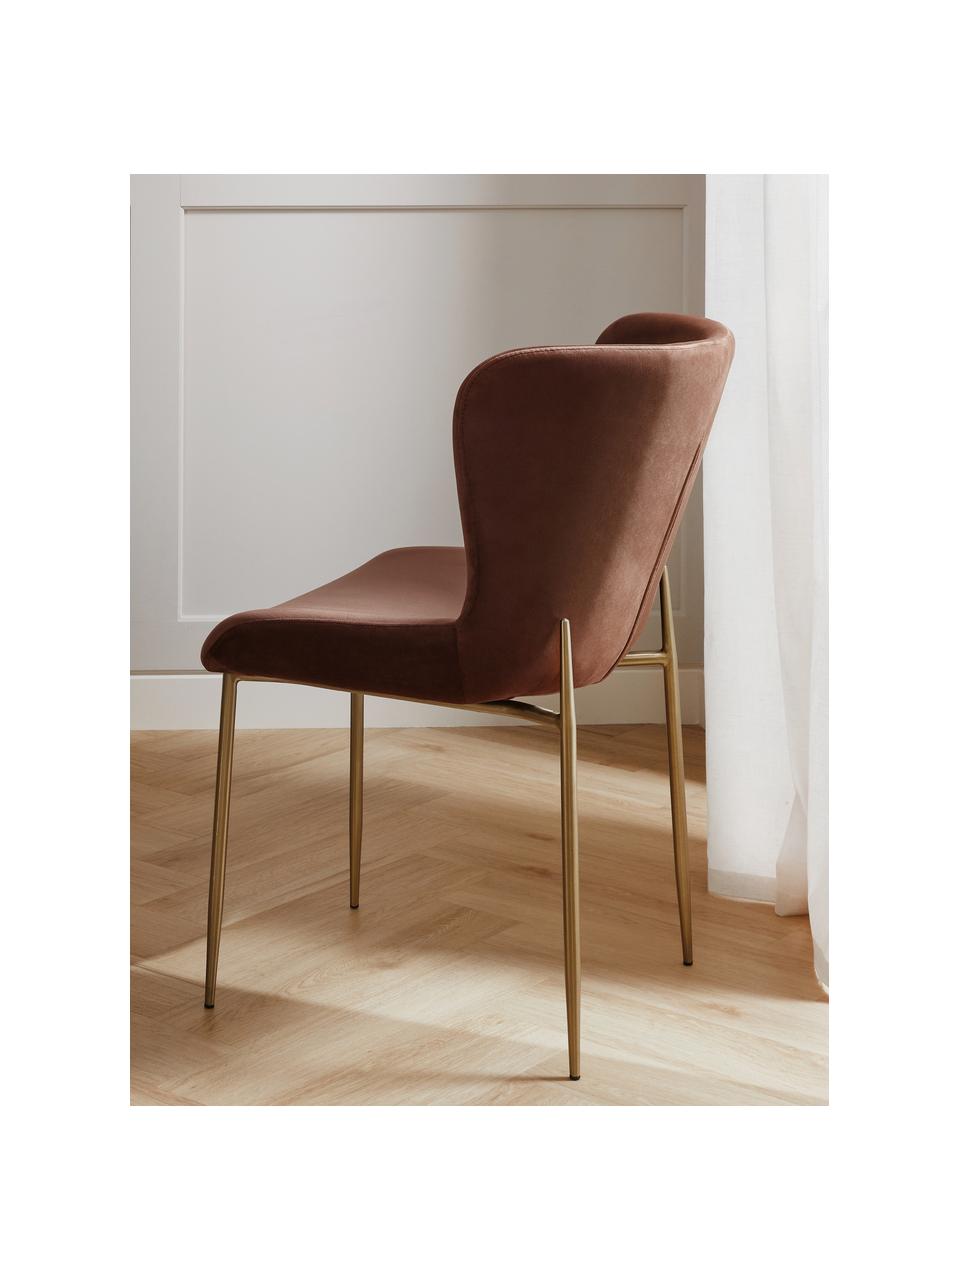 Fluwelen stoel Tess in bruin, Bekleding: fluweel (polyester), Poten: gepoedercoat metaal, Fluweel bruin, goudkleurig, B 49 x H 84 cm